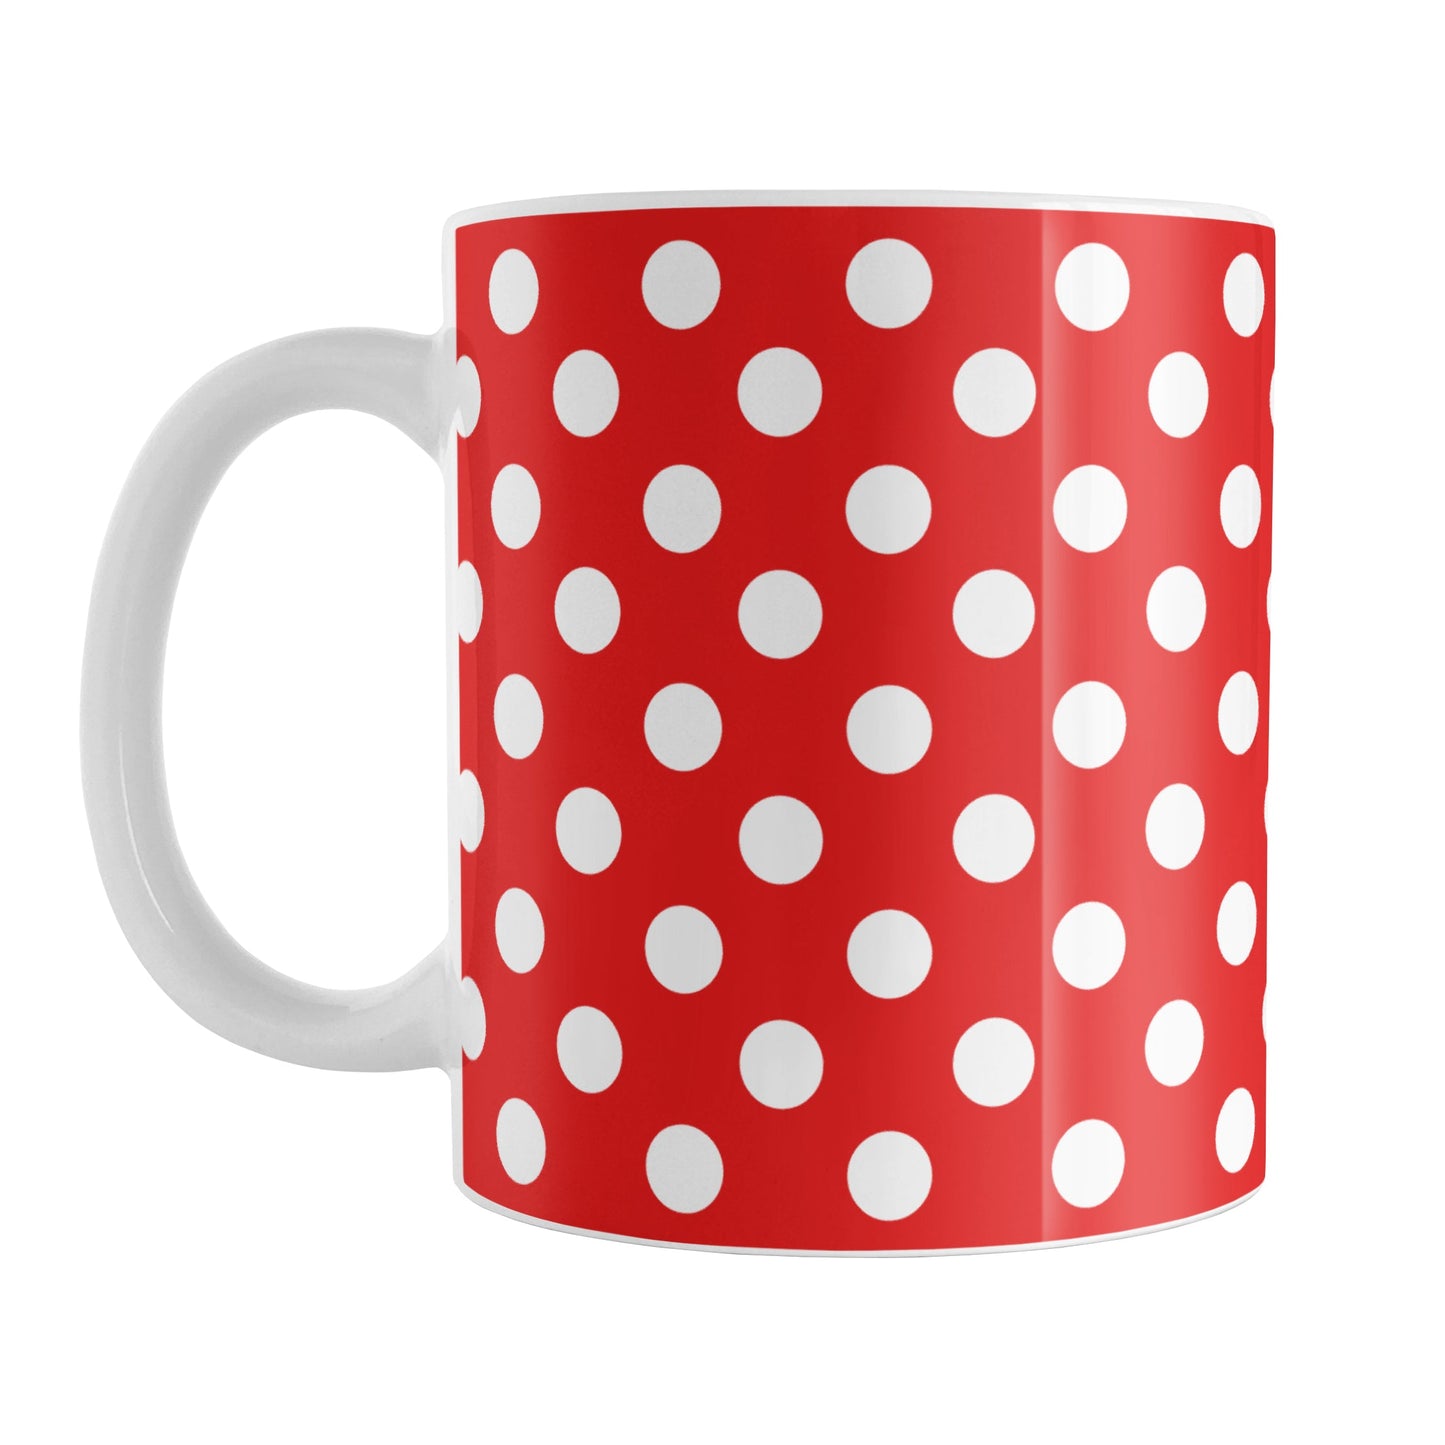 Red Polka Dot Mug (11oz) at Amy's Coffee Mugs